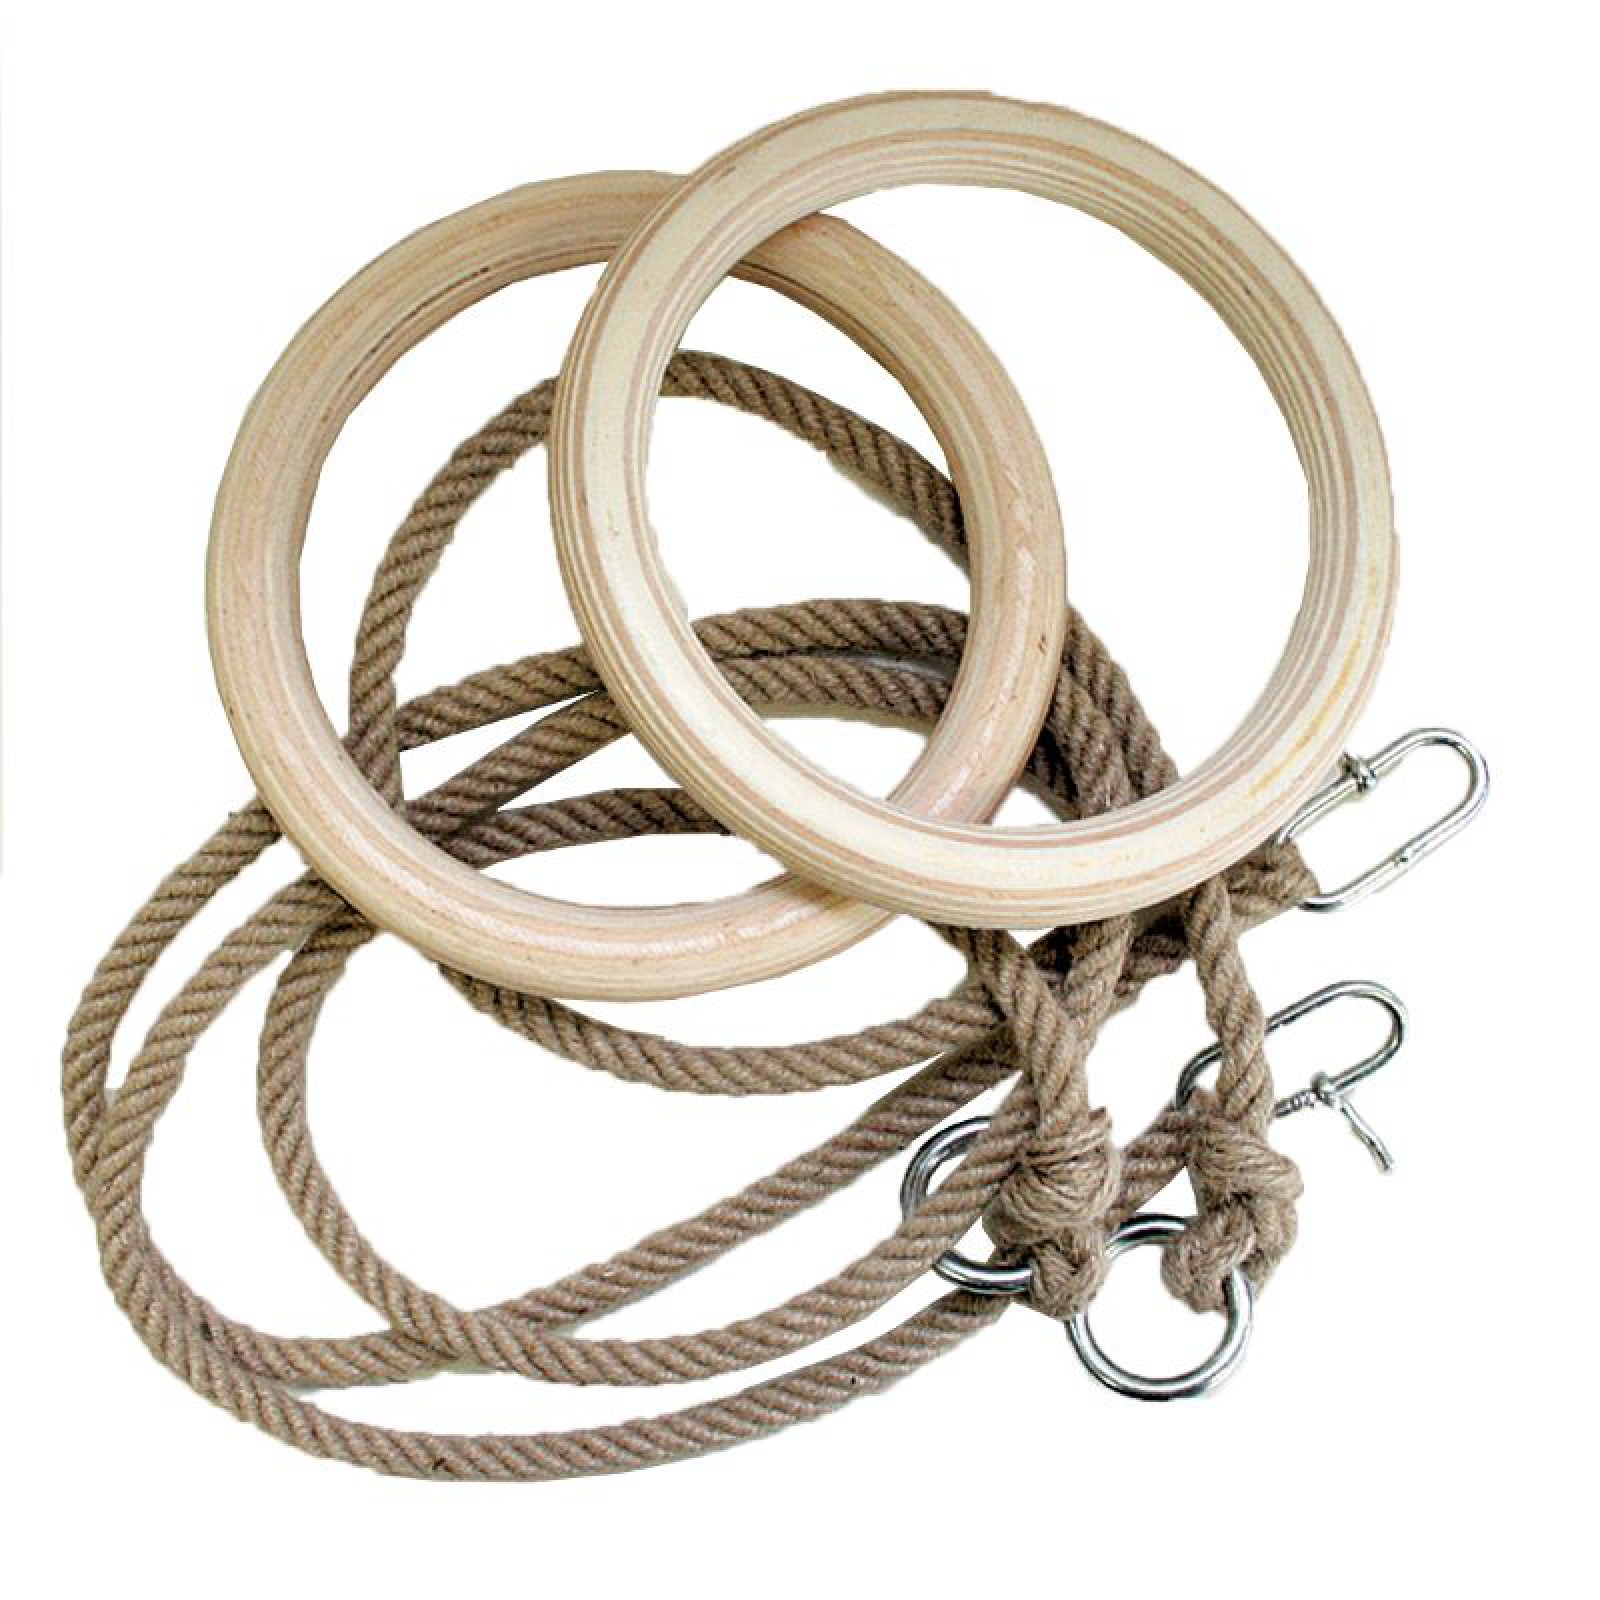 Tornagyűrű  5,2 m-s kötéllel S-SPORT